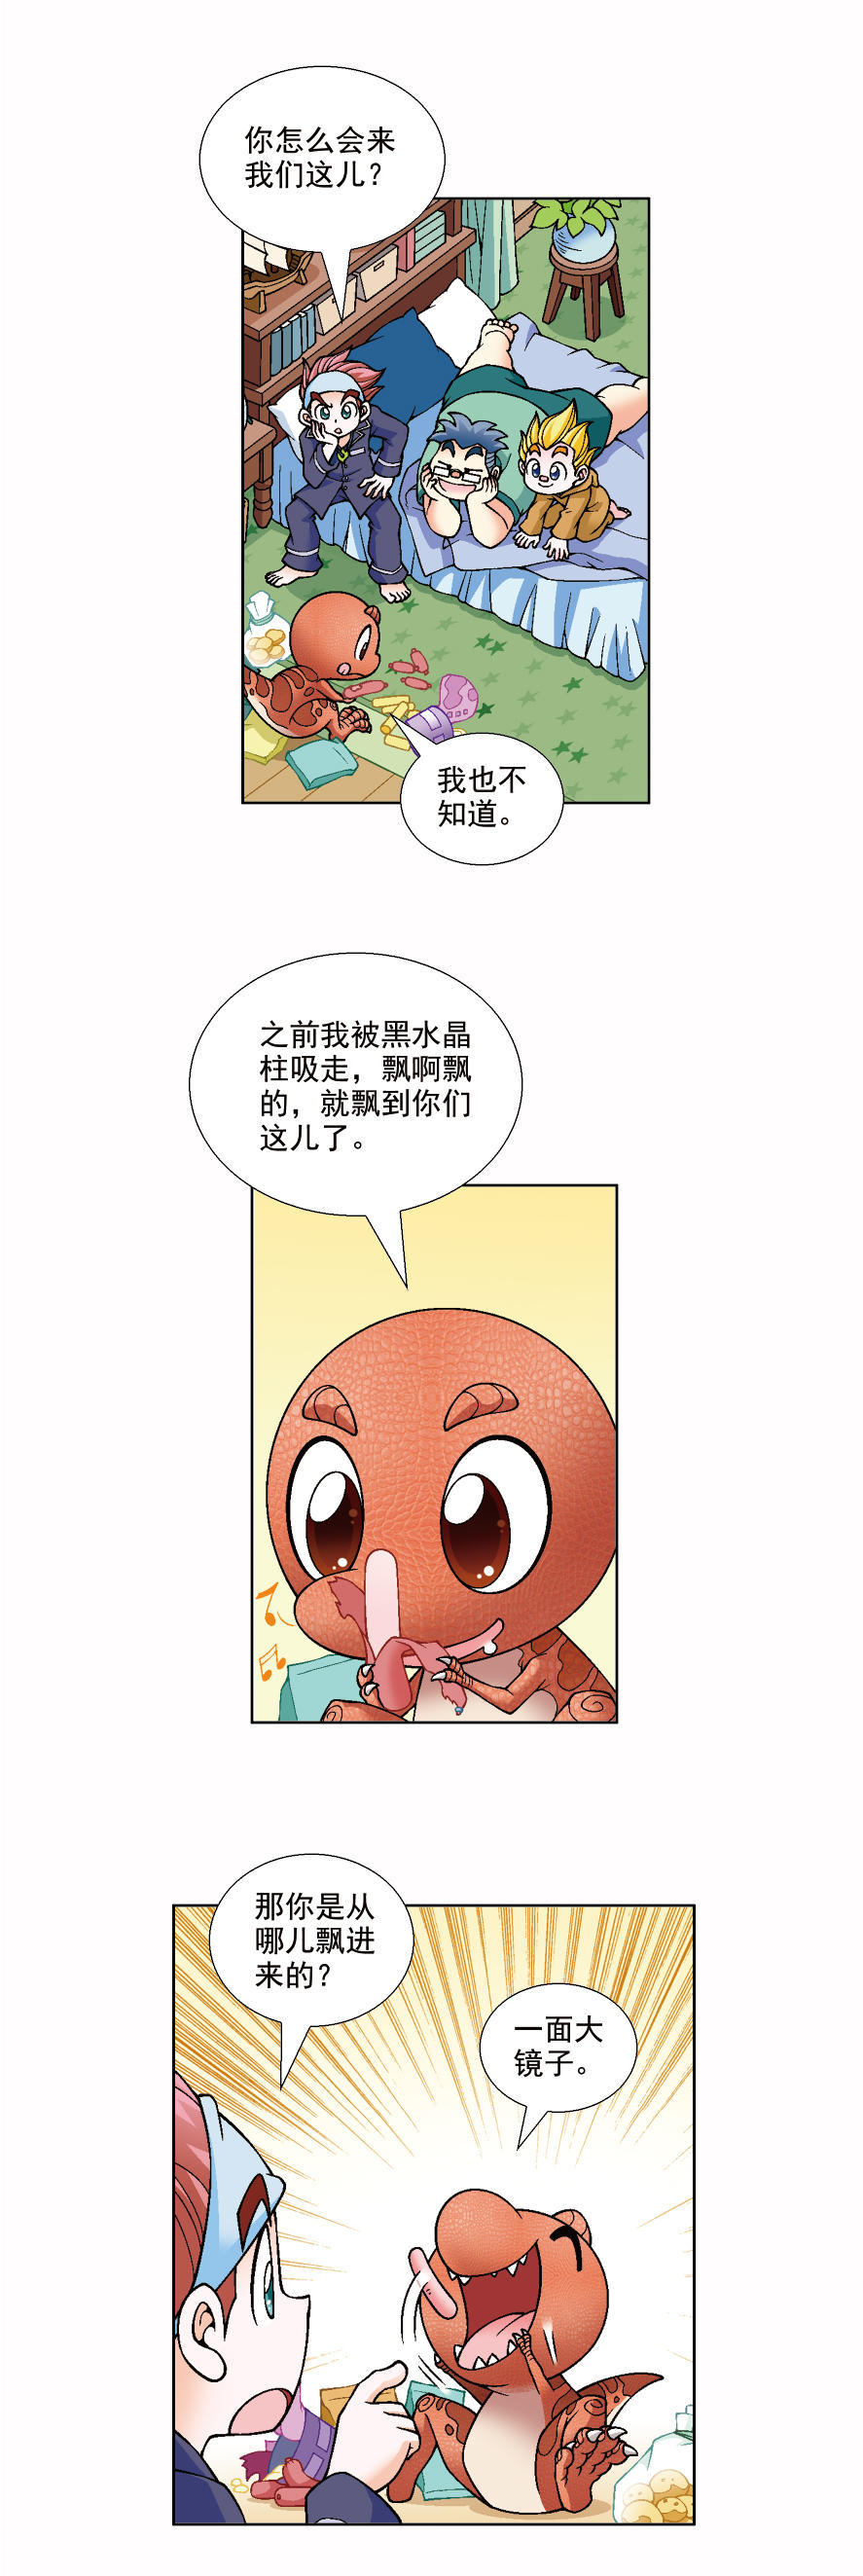 大中华寻宝记漫画连载恐龙世界寻宝记三vol2